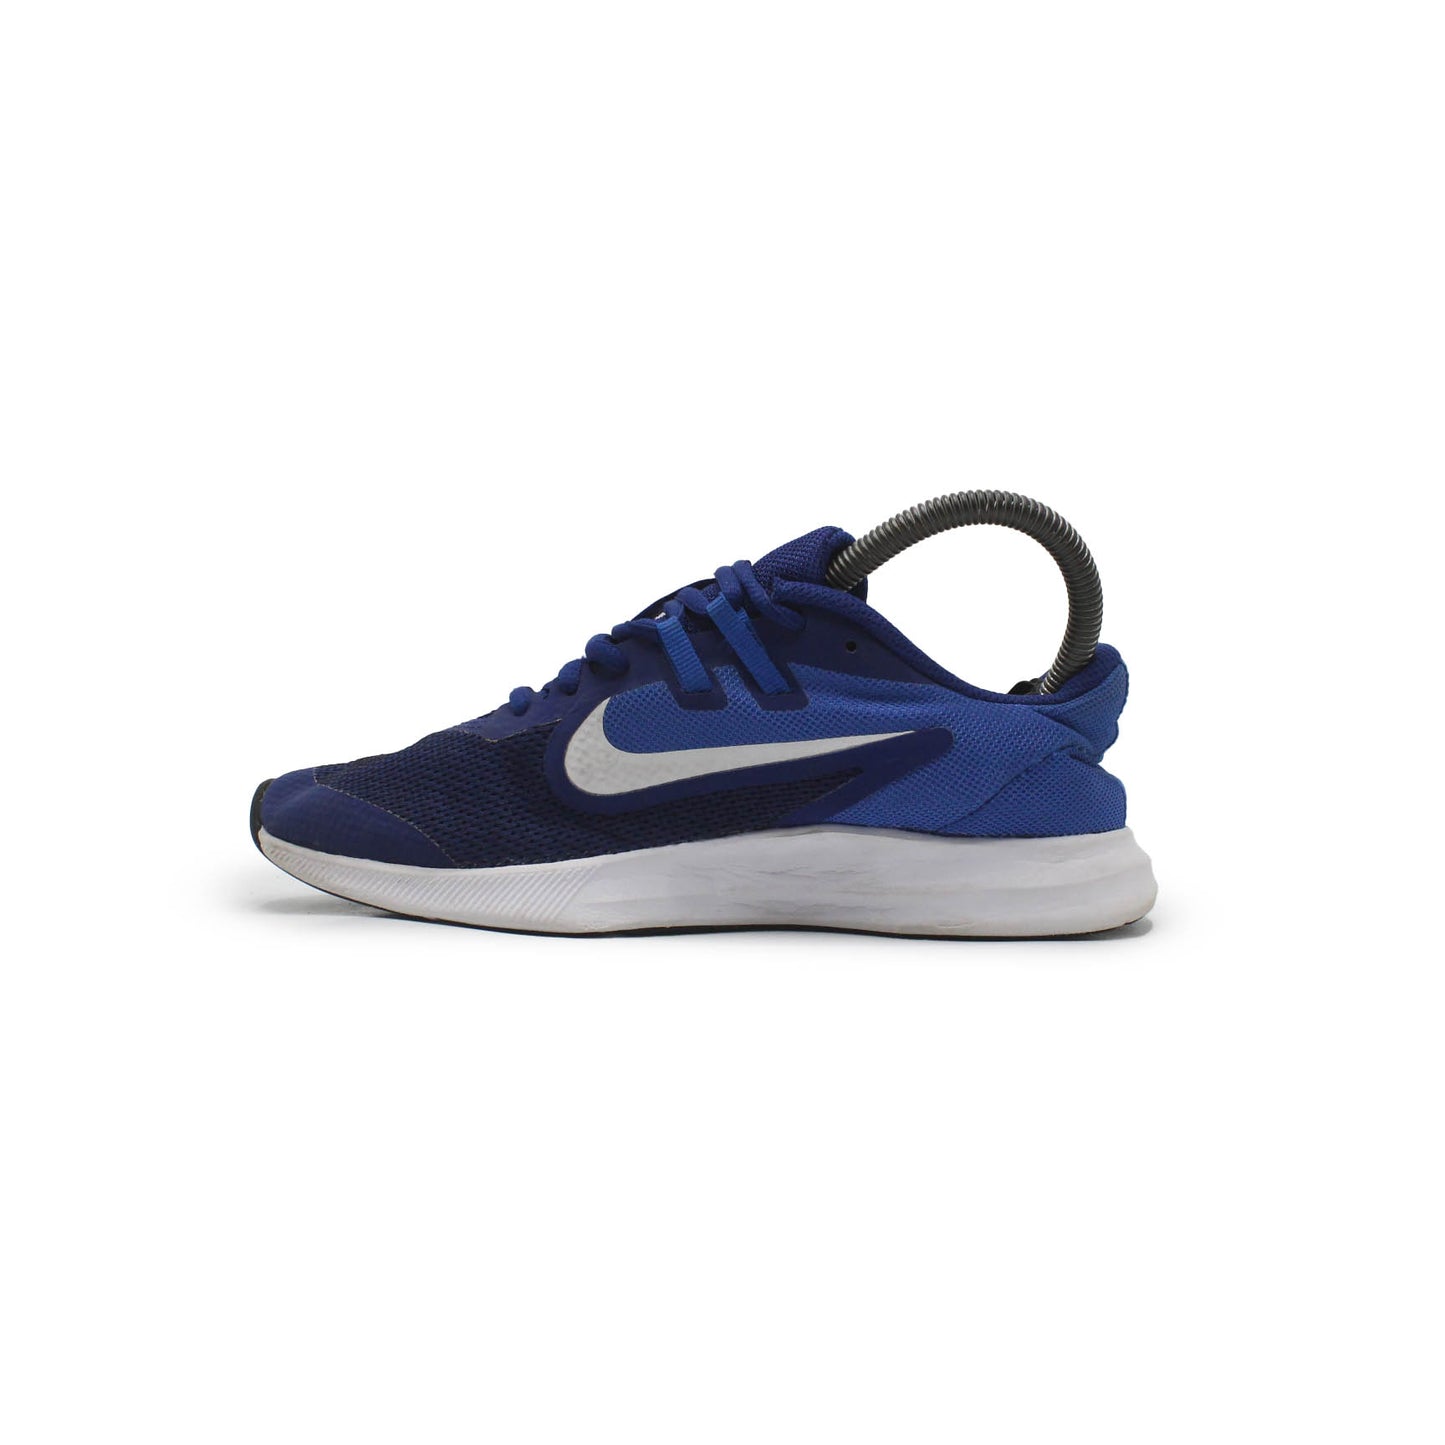 Nike Downshifter 9 Running Shoe